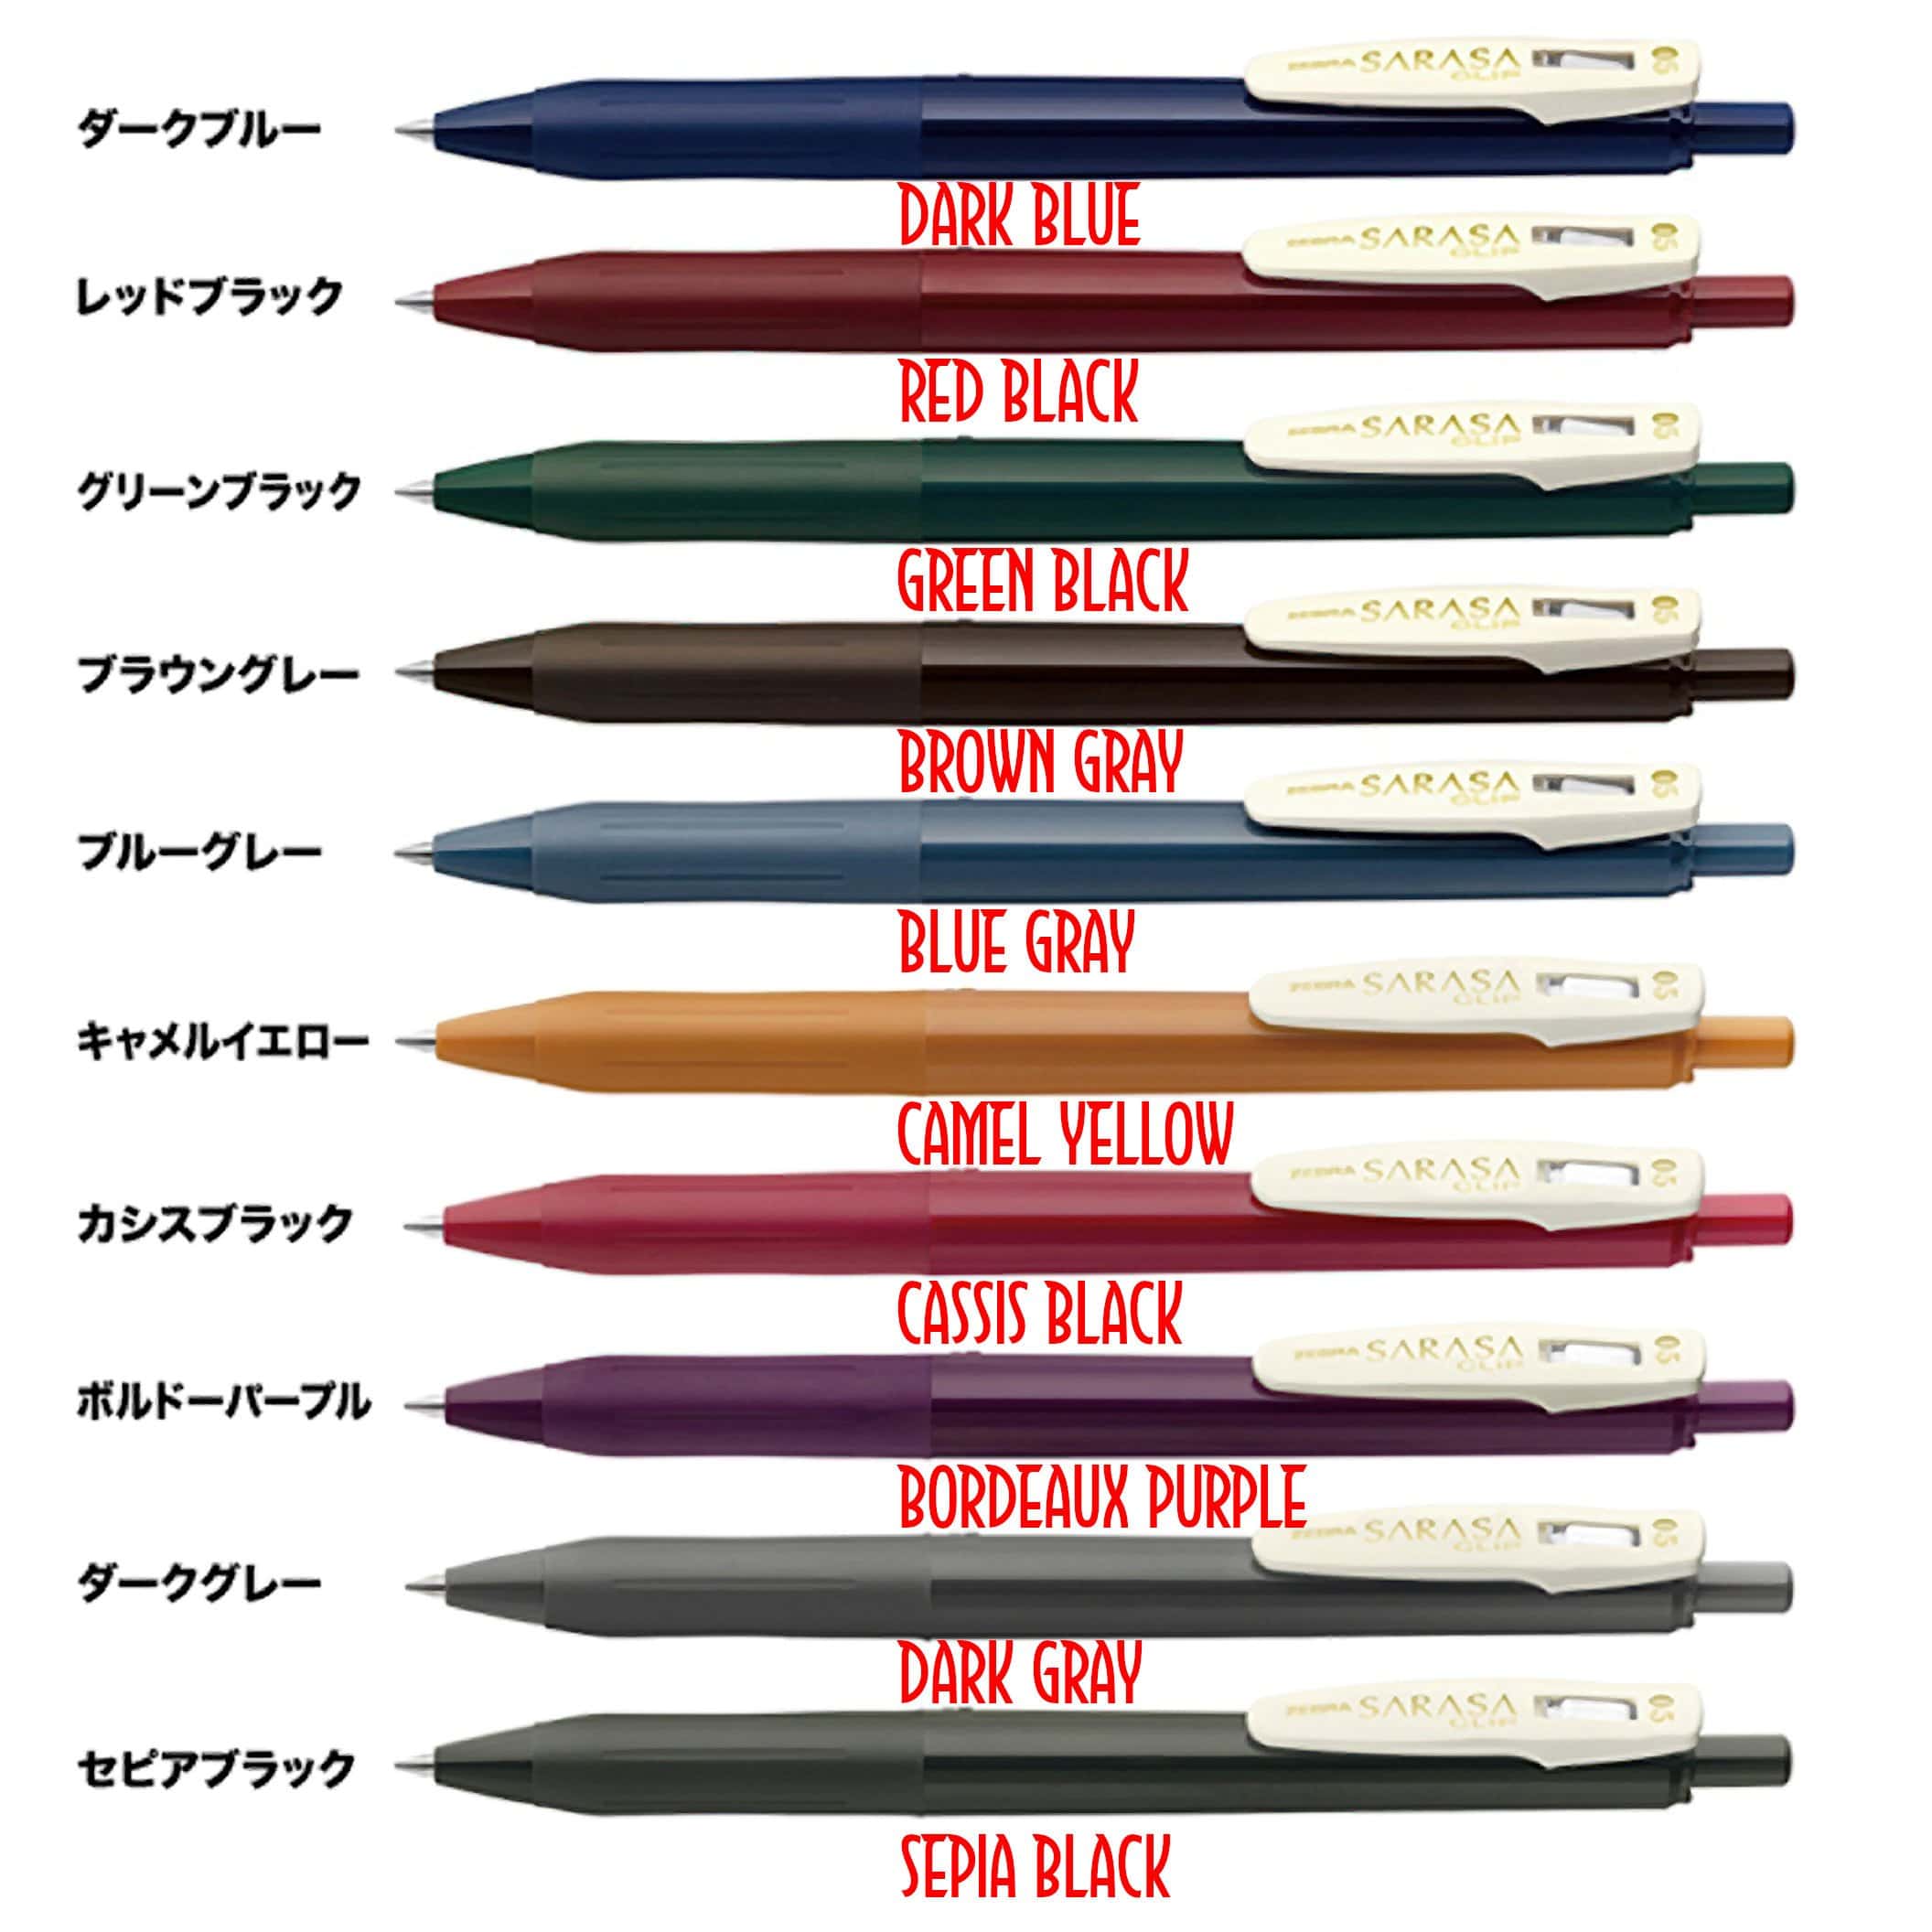 https://stationerymanor.com/cdn/shop/products/zebra-sarasa-vintage-0-5mm-push-clip-gel-pen-all-colors-pens-pencils-15013102747684_2112x.jpg?v=1596021111